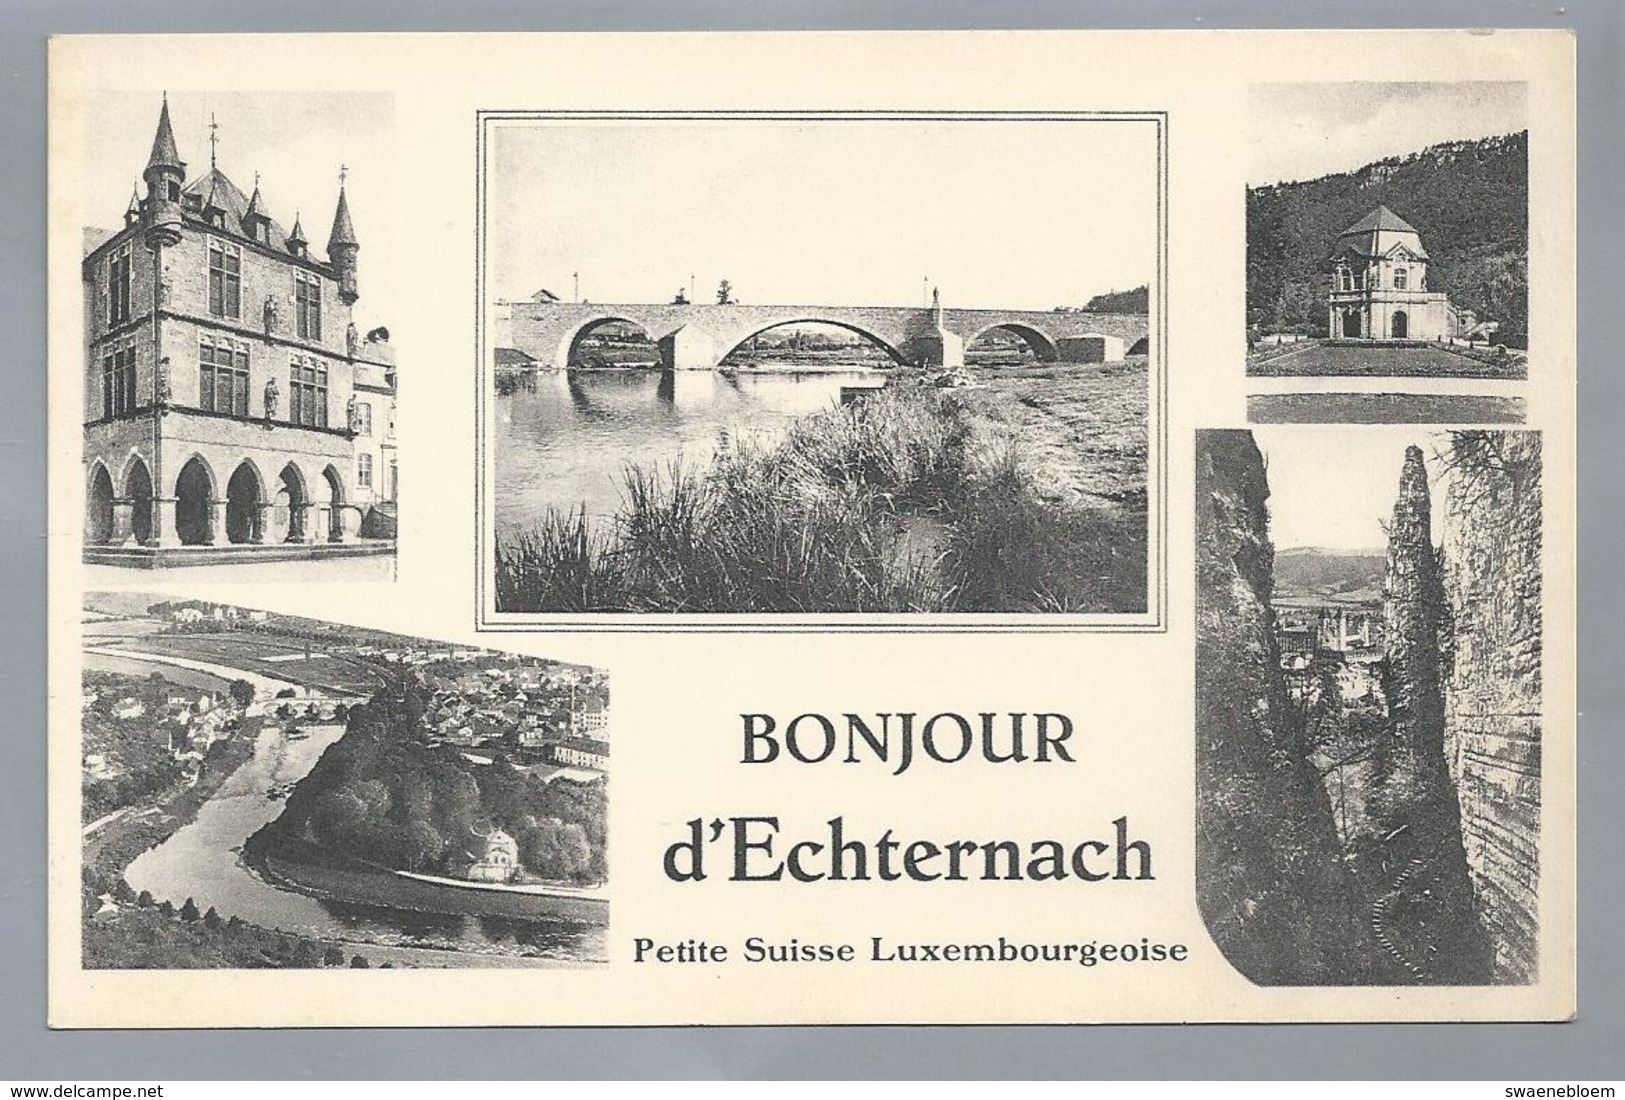 LU.- ECHTERNACH. BONJOUR D'ECHTERNACH Petite Suisse Luxembourgeoise THILL. E.A.Schaack Luxembourg. - Echternach